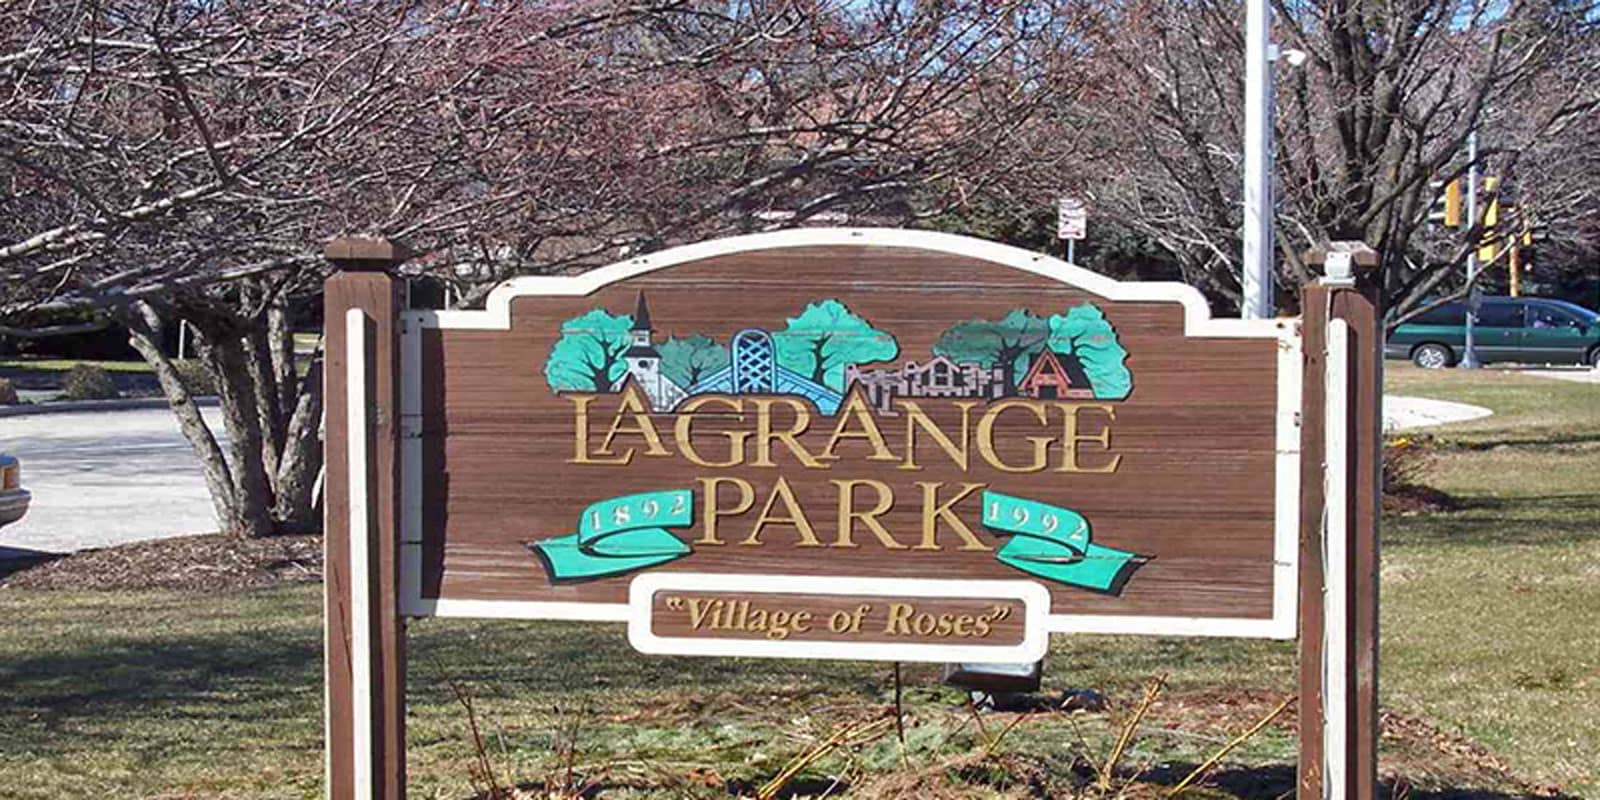 City sign for LaGrange Park, IL